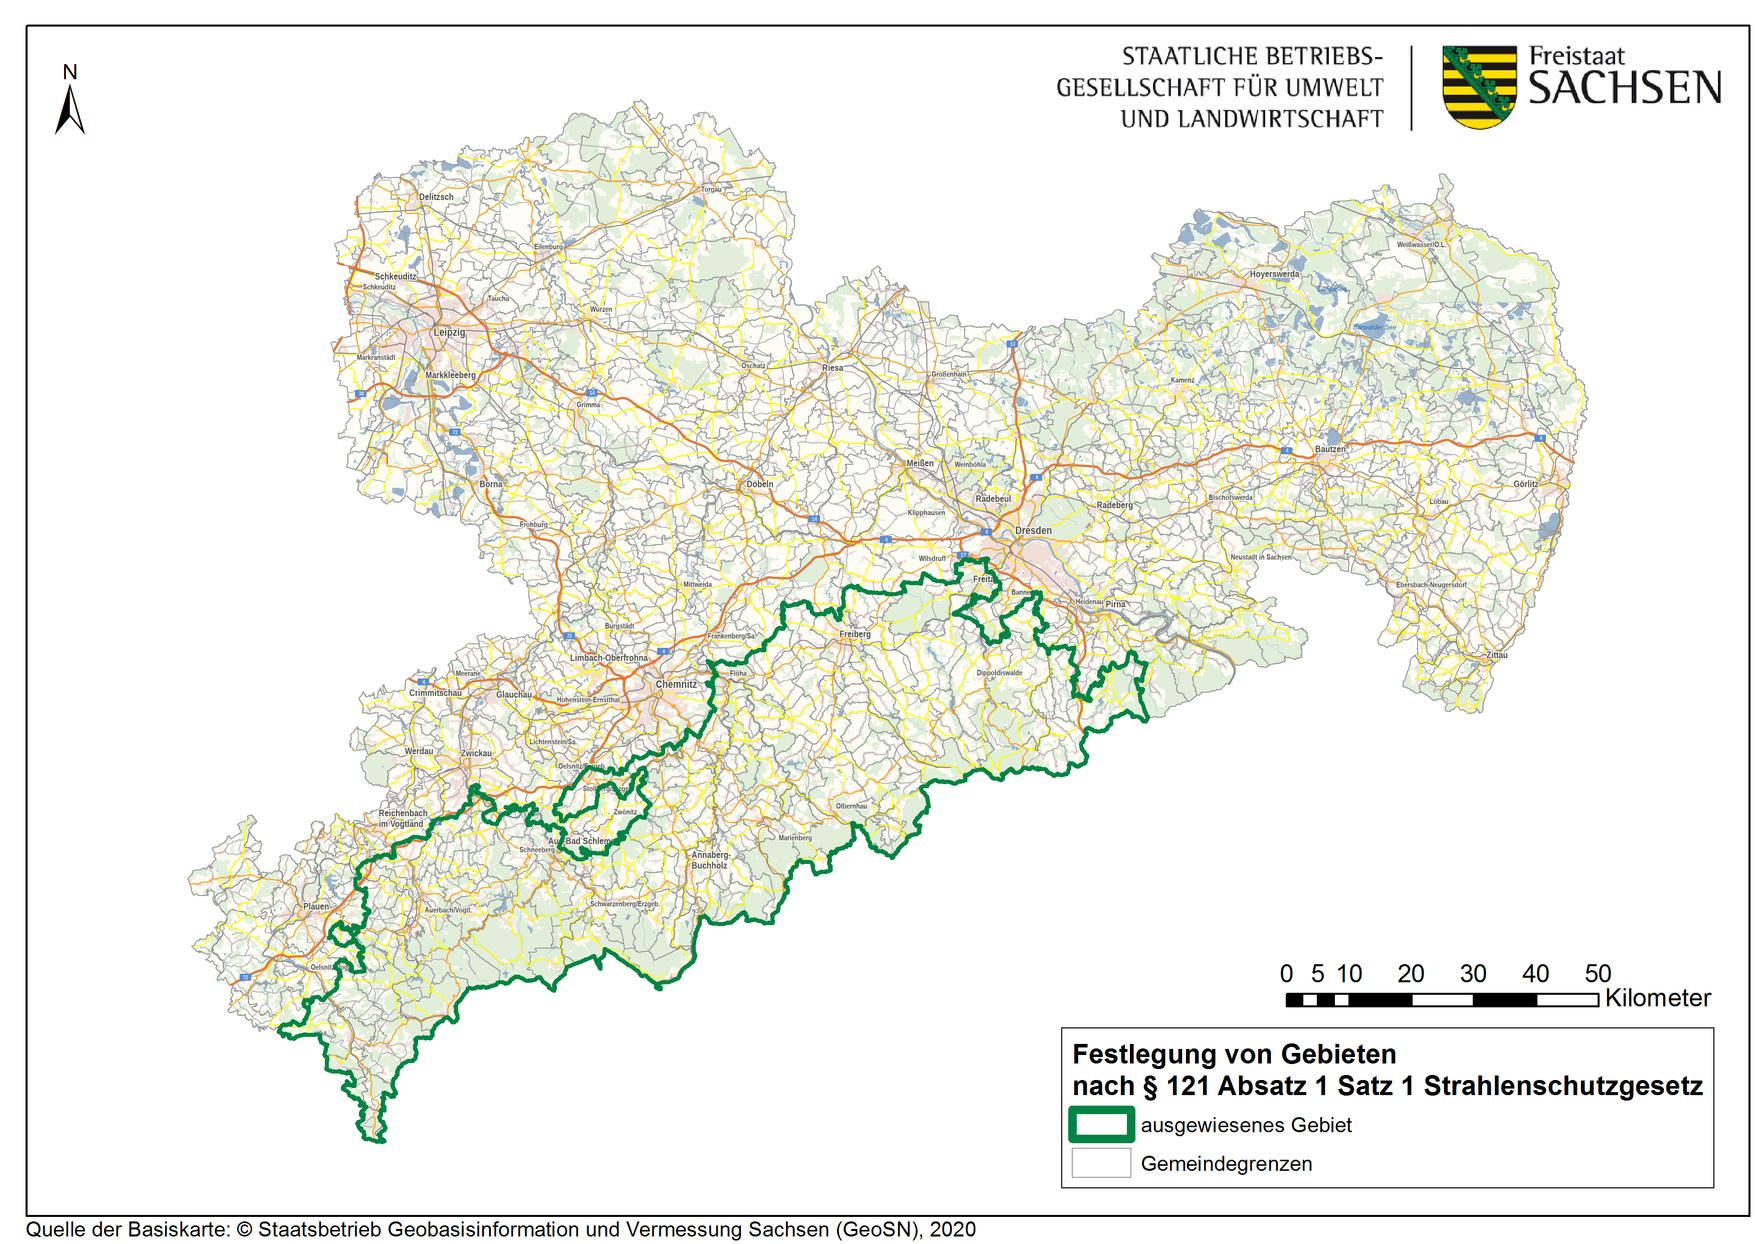 Auf einer Karte des Freistaates Sachsen ist das Radonvorsorgegebiet im Erzgebirge und Vogtland markiert.